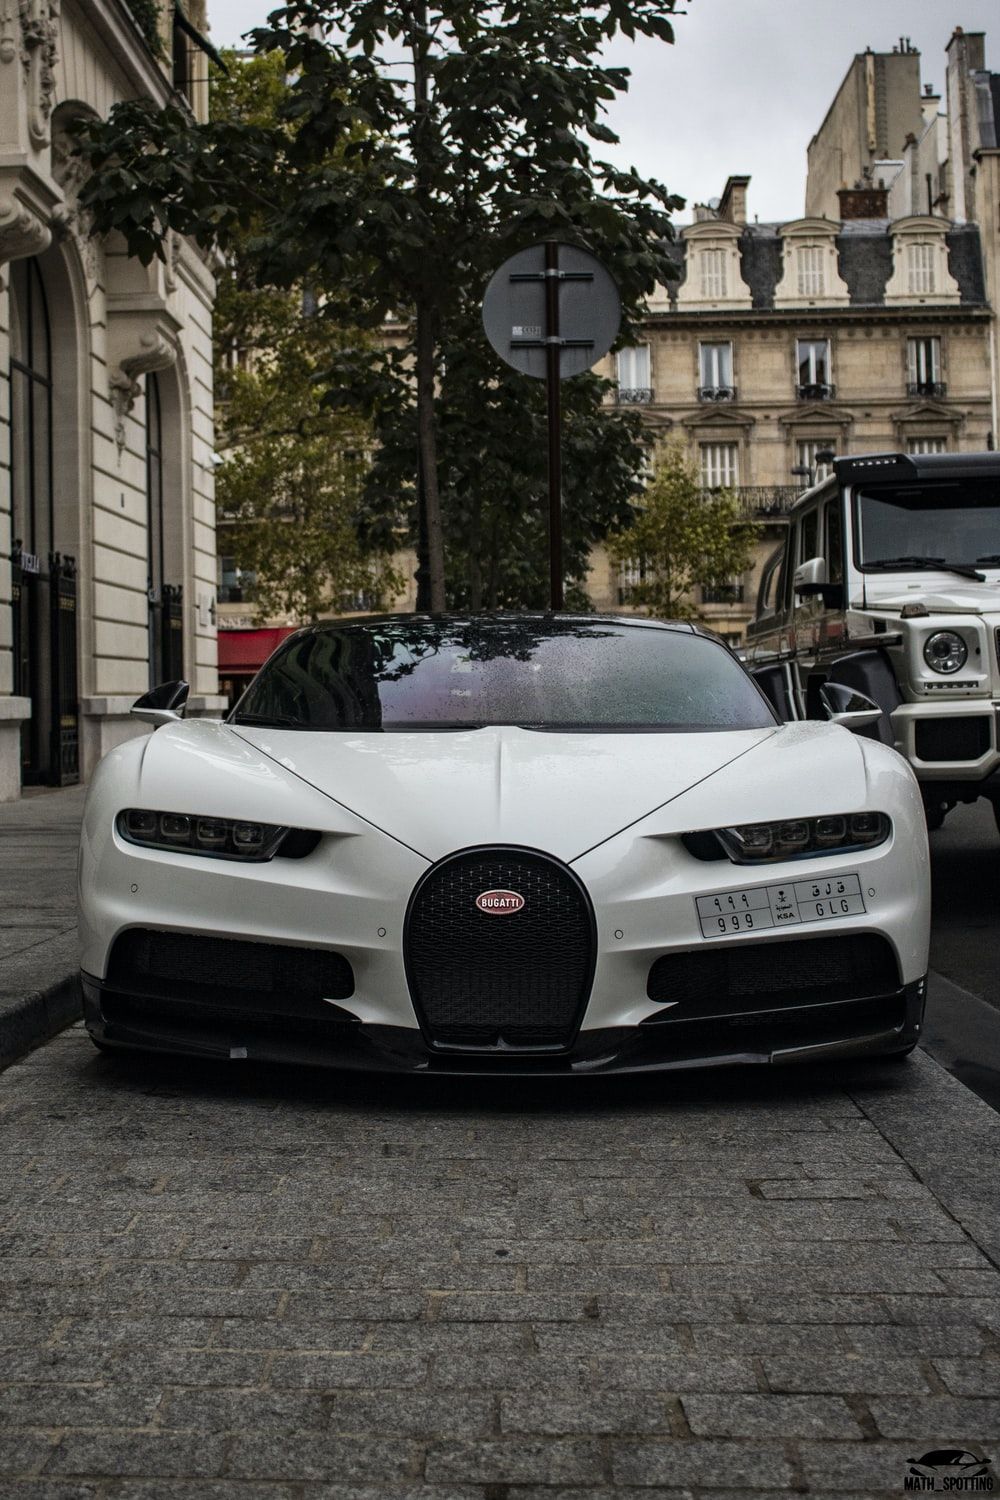 Bugatti Chiron Picture. Download Free Image